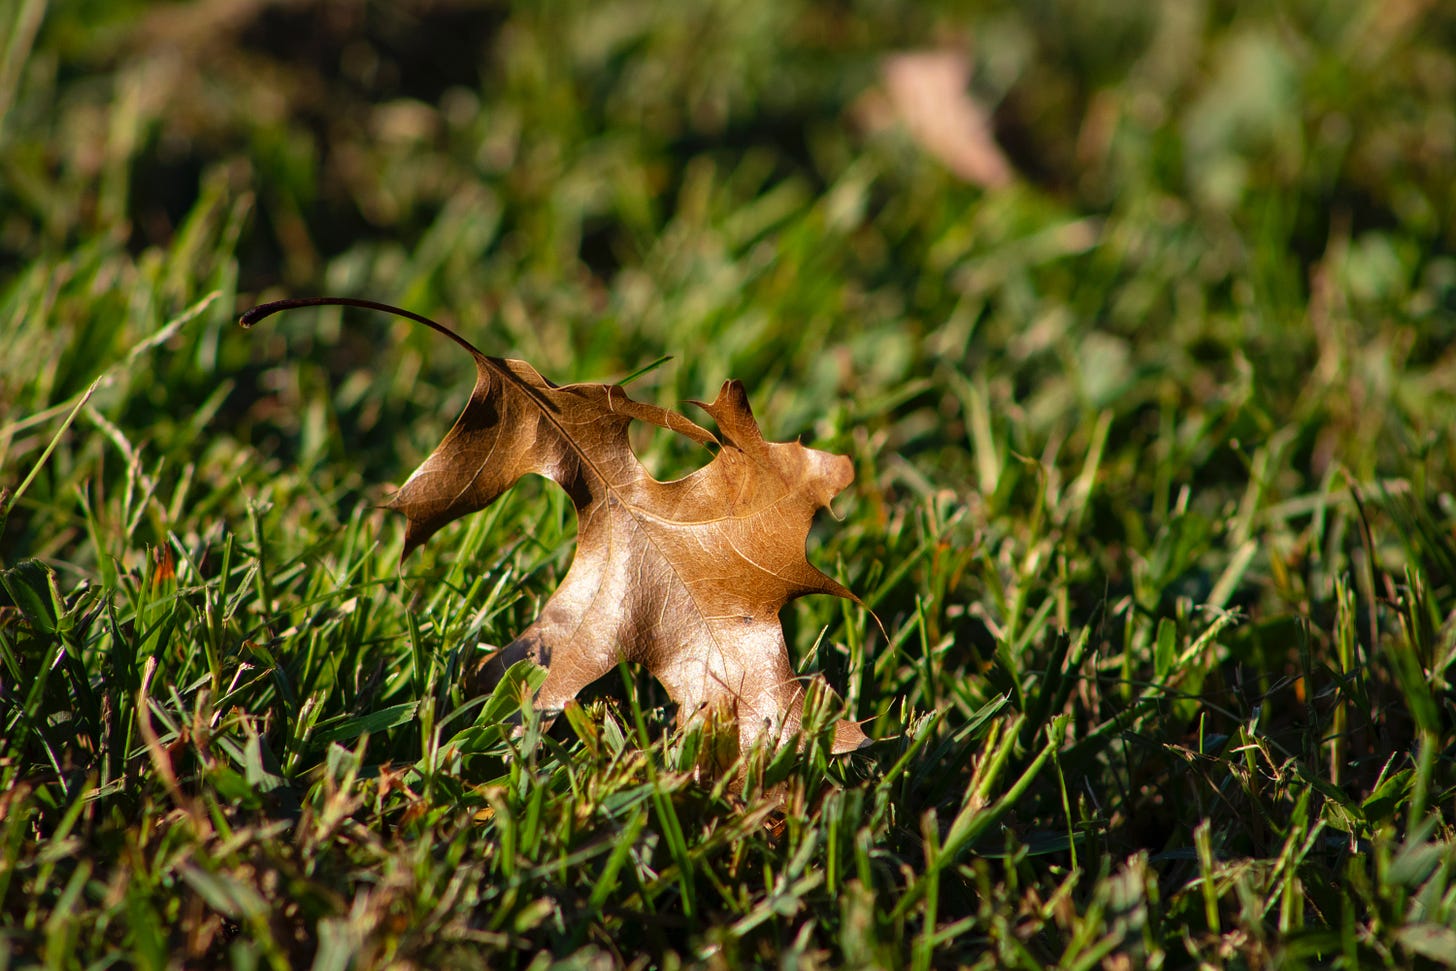 Brown oak leaf resting on a green lawn.